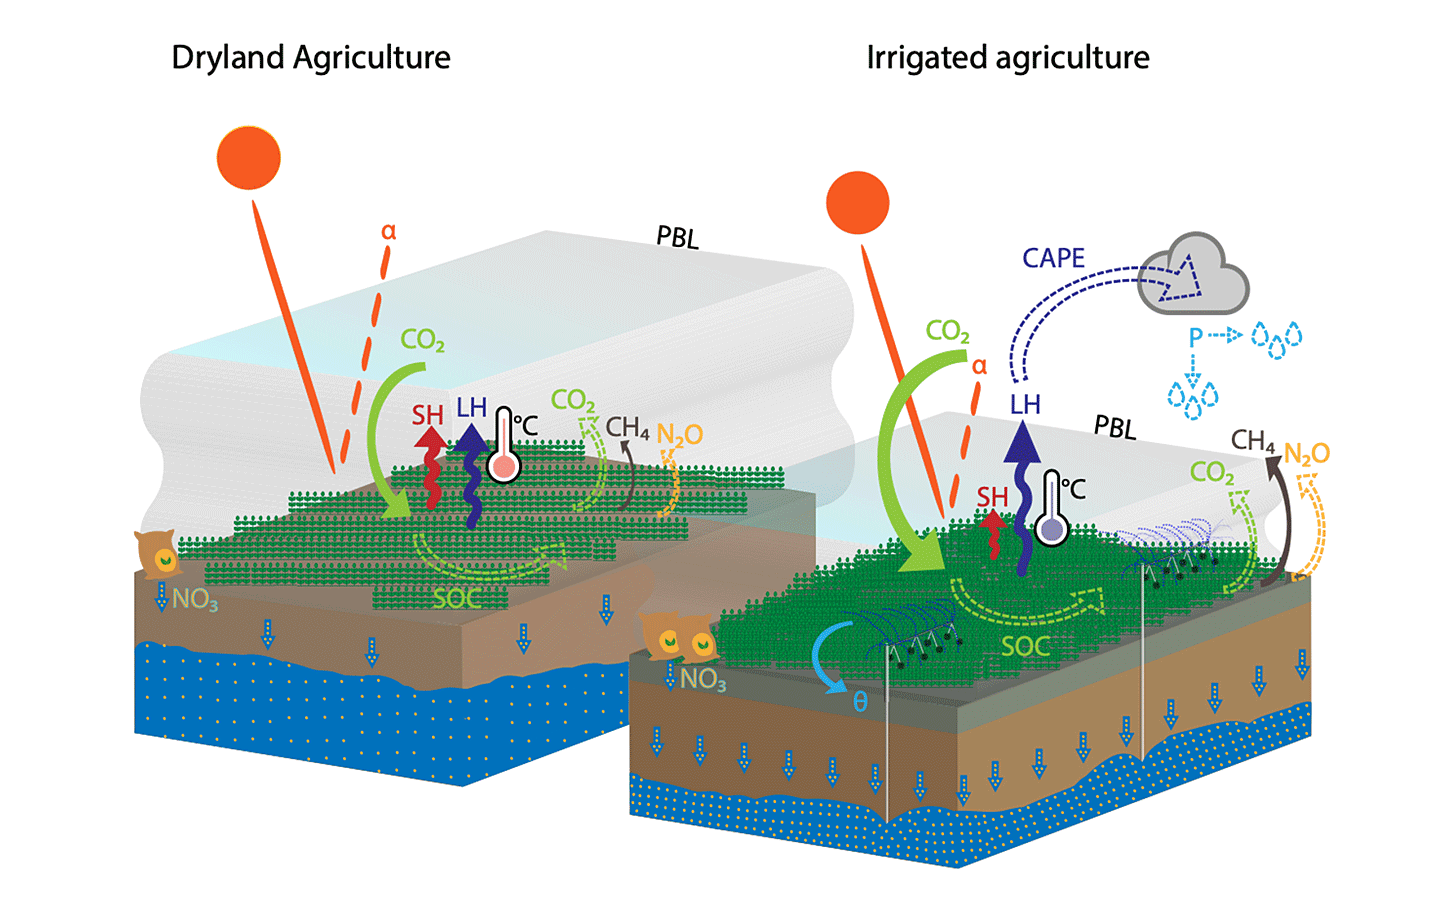 図1　a) 乾燥農地、b) 灌漑農地における地表付近のプロセス。矢印はそれぞれの要素が及ぼす影響を示す（実線：確信度が高い、点線：確信度が低い）。蒸発熱（潜熱：latent heat）および大気の運動による熱輸送（顕熱：sensible heat）の役割や、様々な物質（炭素：carbon, 亜酸化窒素：N2O, メタン：CH4, 硝酸塩：NO3）の循環も示されている。